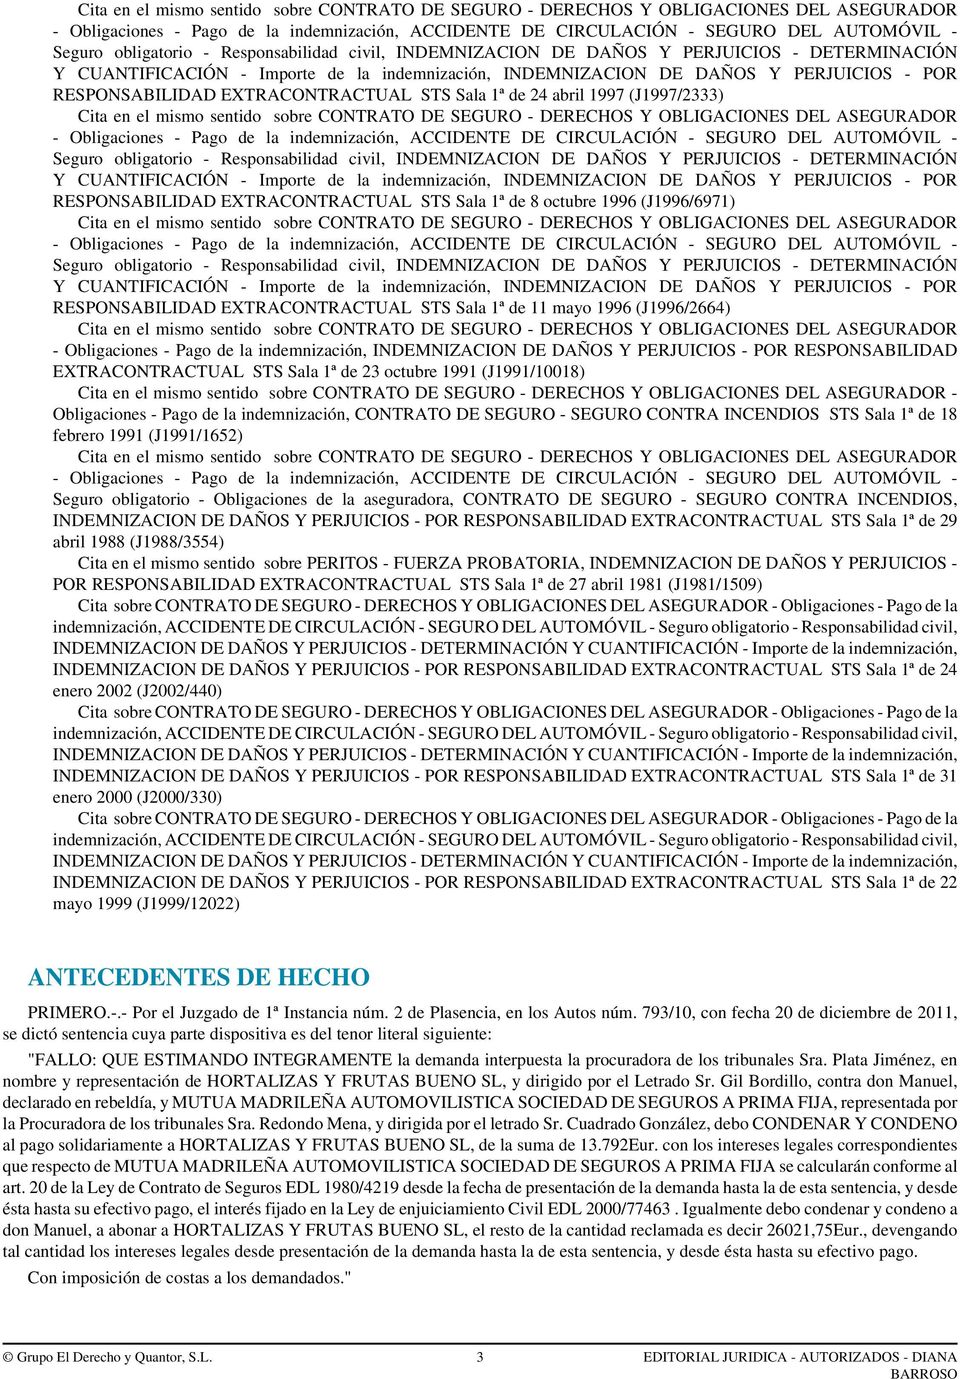 Obligaciones - Pago de la indemnización, CONTRATO DE SEGURO - SEGURO CONTRA INCENDIOS STS Sala 1ª de 18 febrero 1991 (J1991/1652) Seguro obligatorio - Obligaciones de la aseguradora, CONTRATO DE